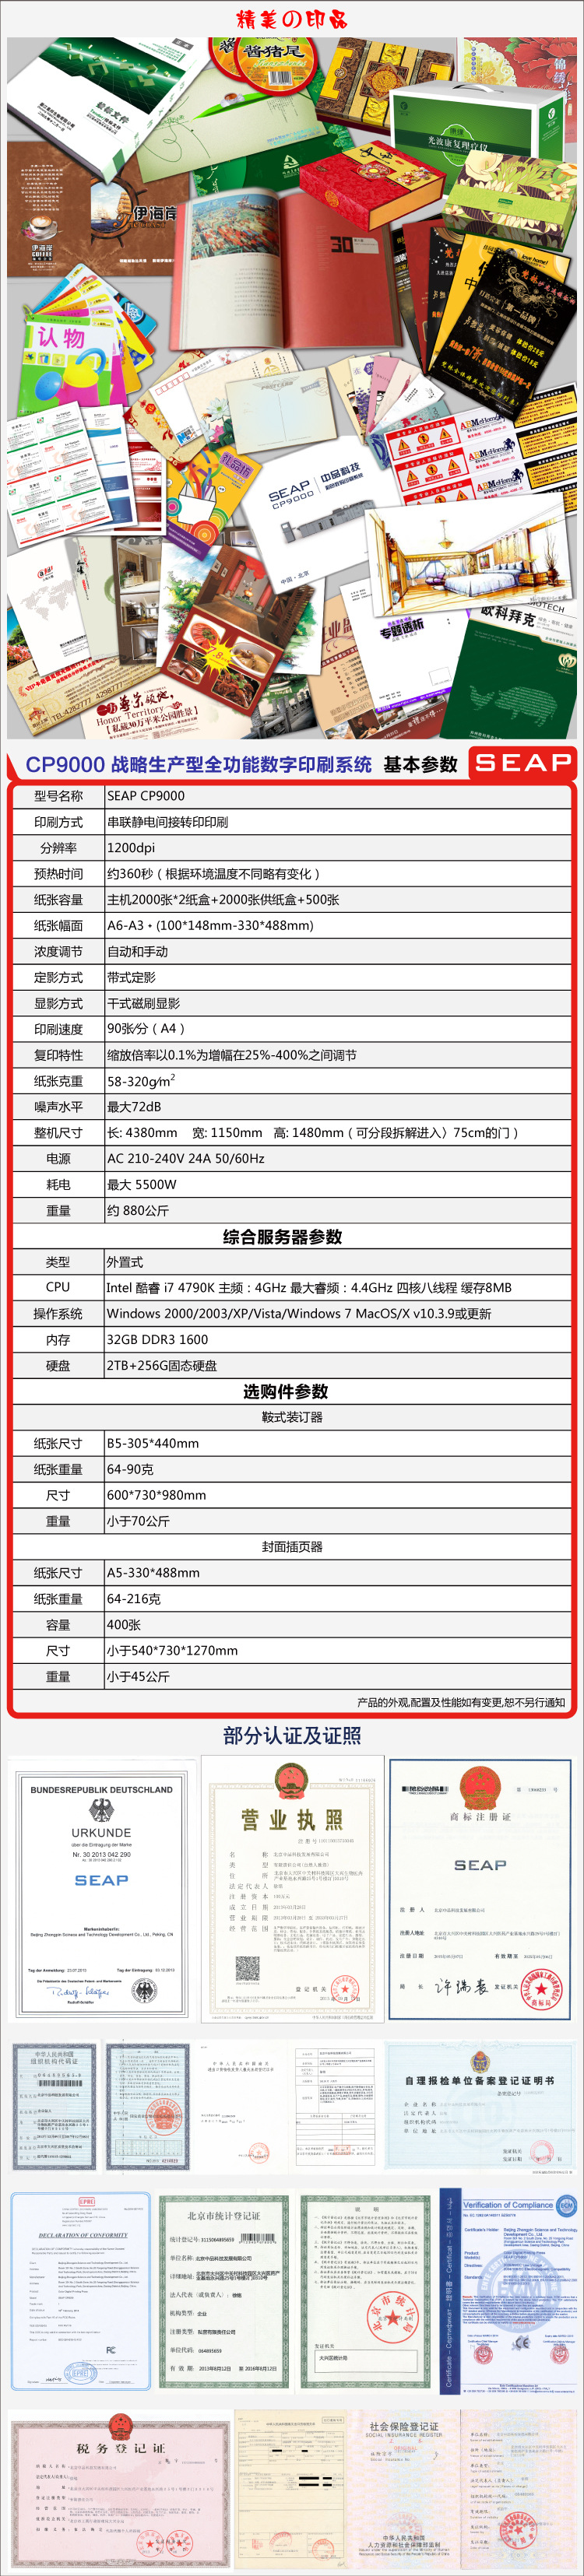 CP9000-中文站--产品参数-750<i></i>X3500